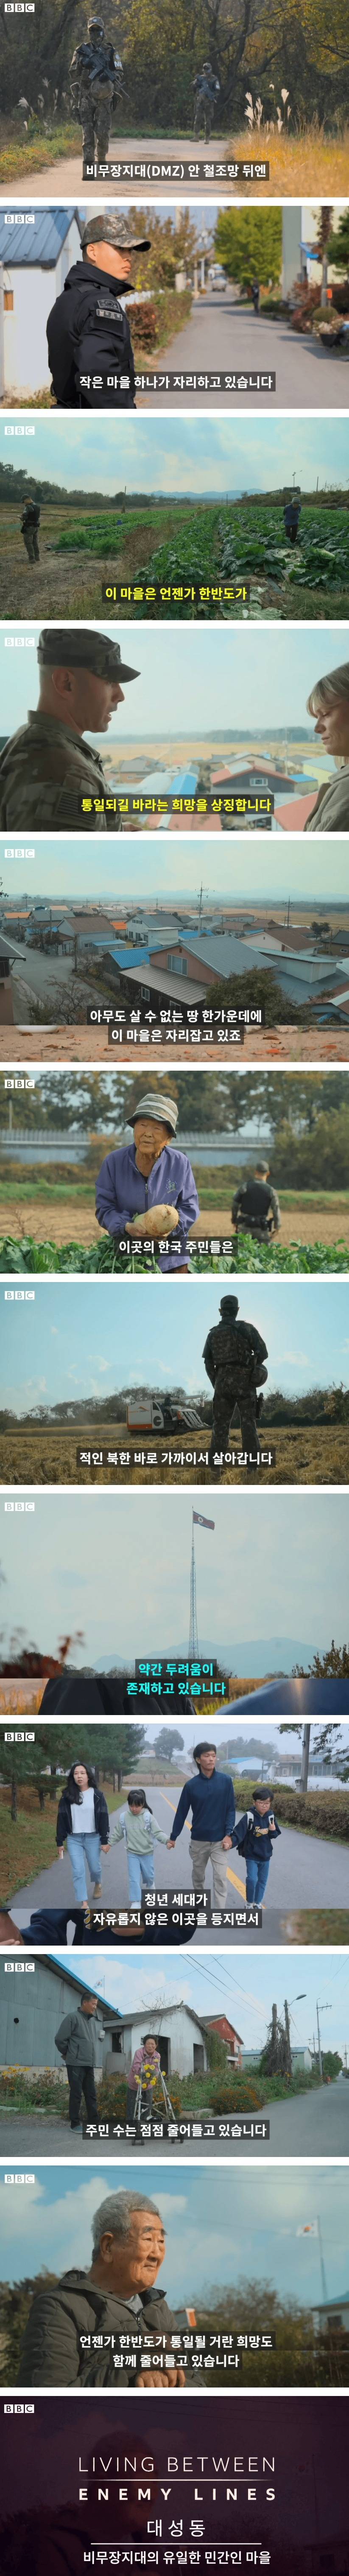 북한에서 가장 가까운 마을